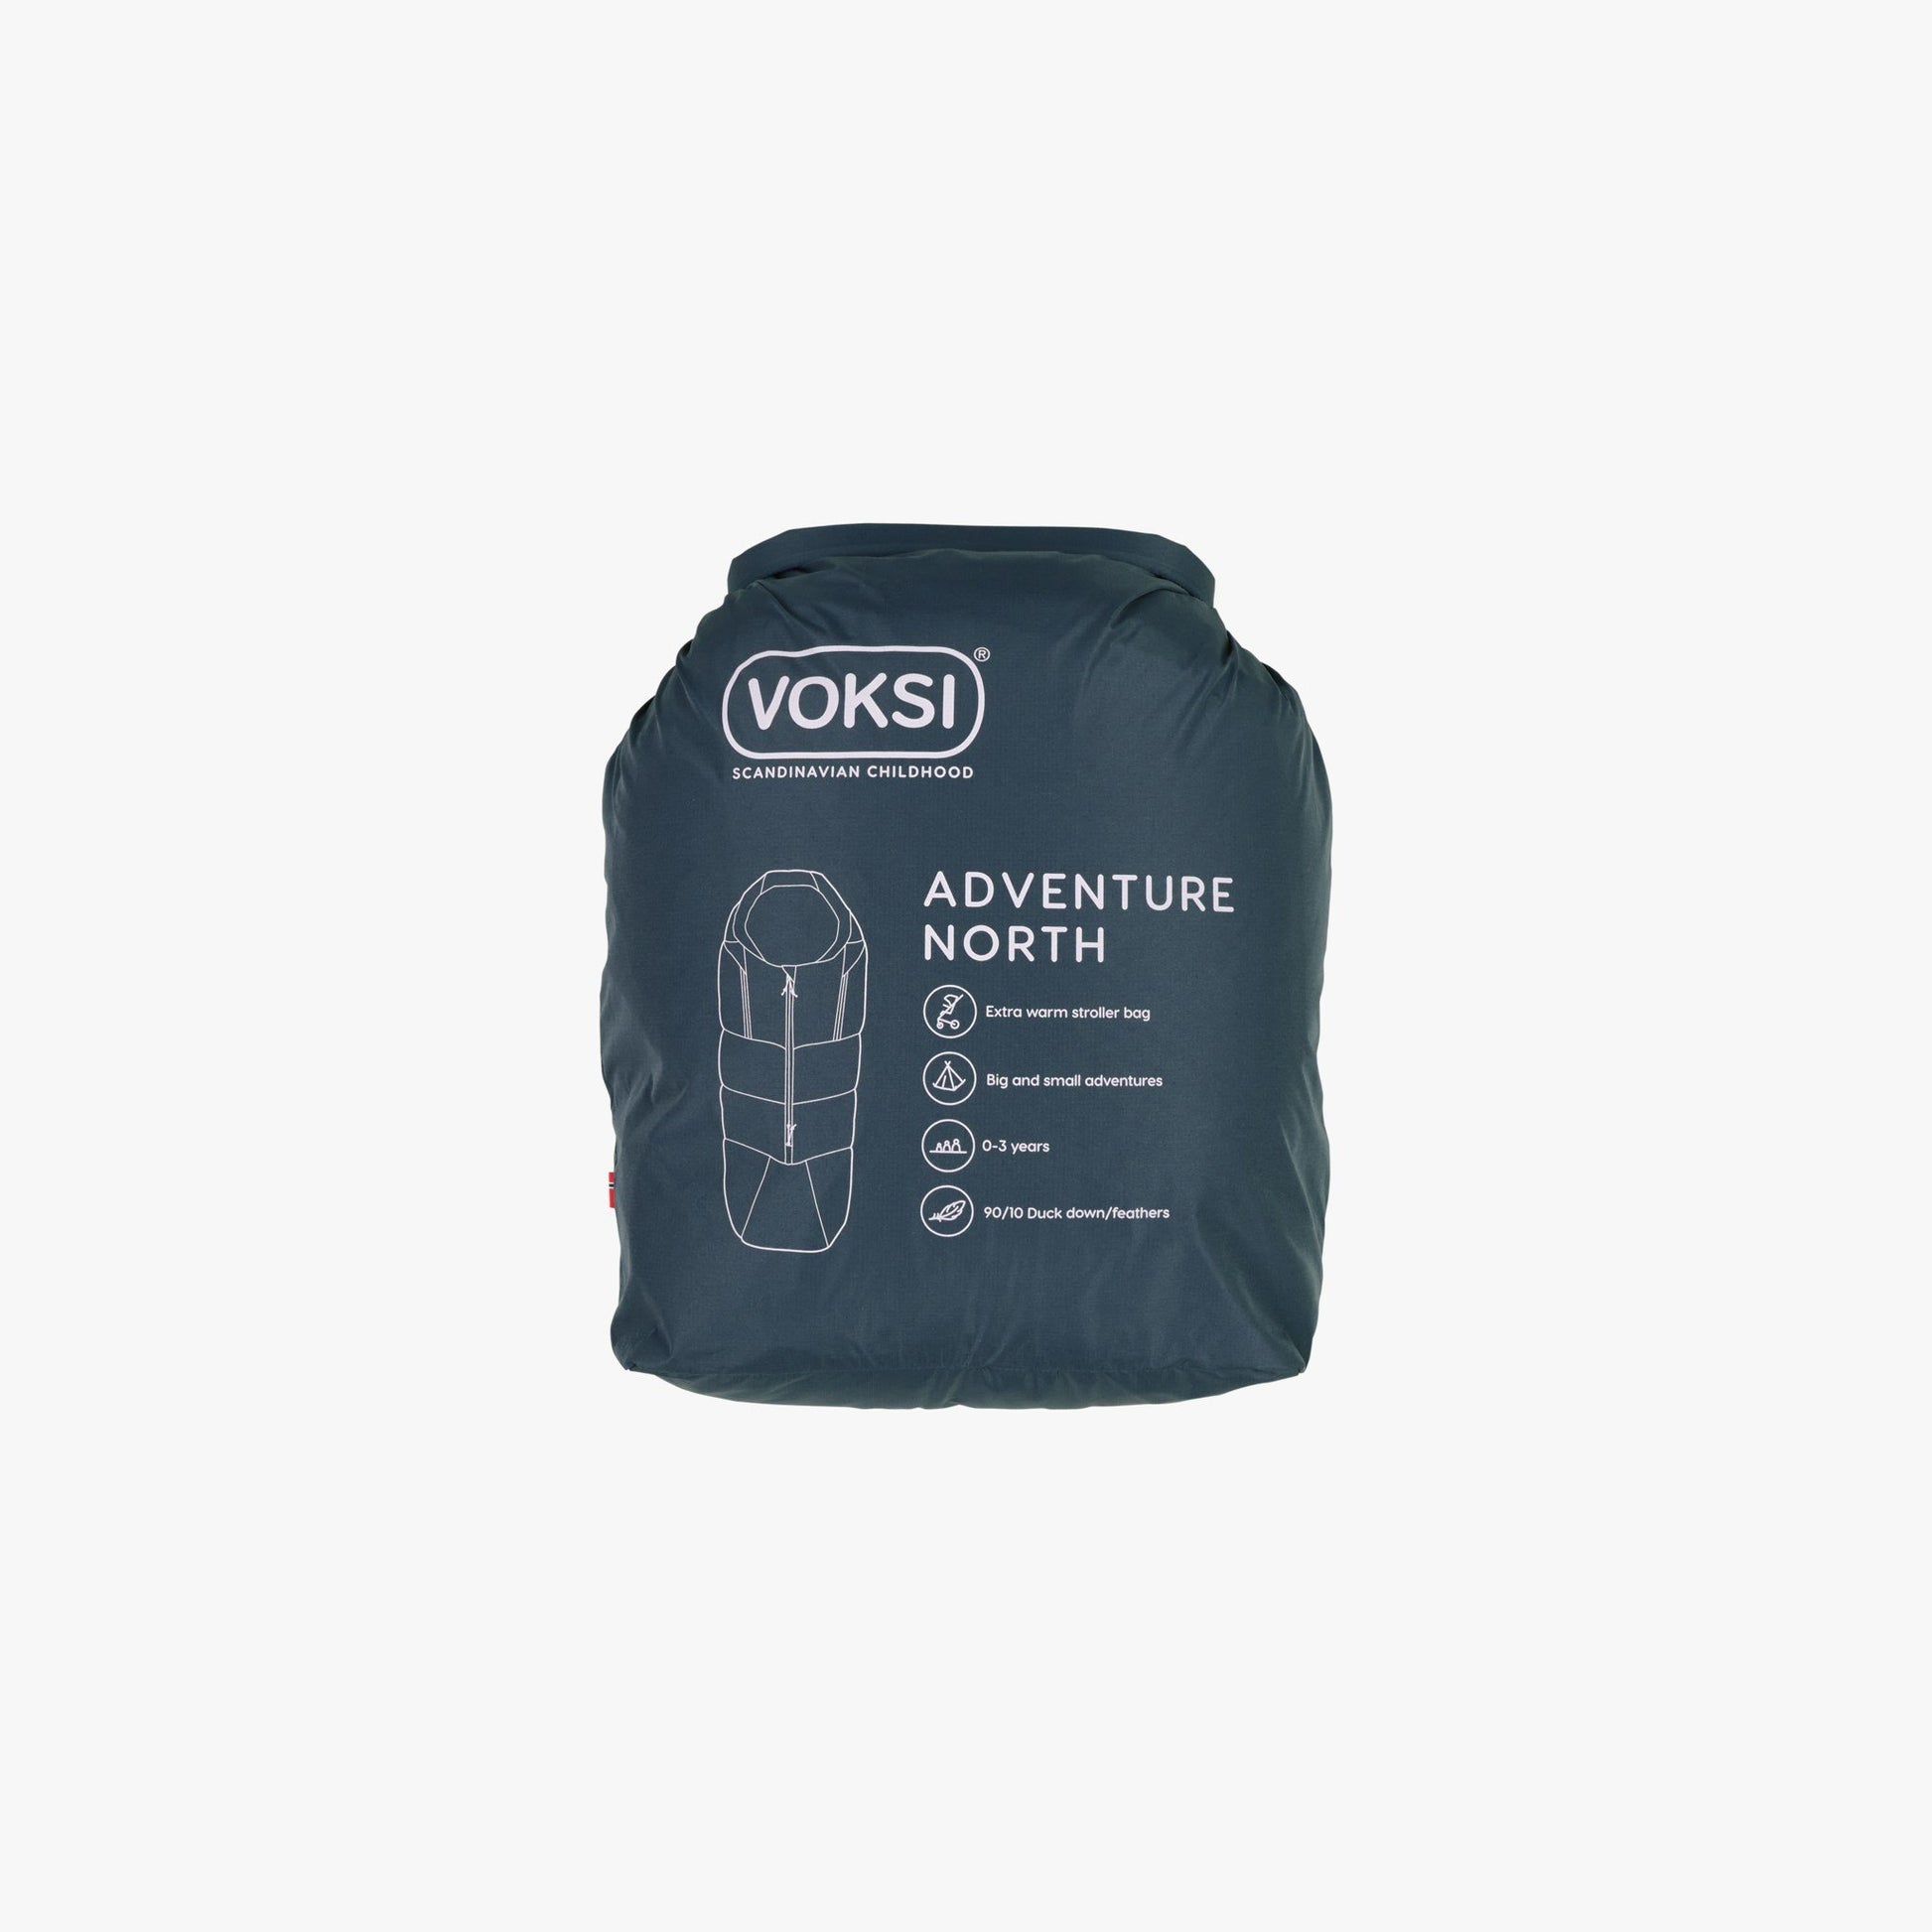 Produktbild: Adventure North - Fußsack no von Voksi im Onlineshop von dasMikruli - Dein Shop für Baby Erstausstattung